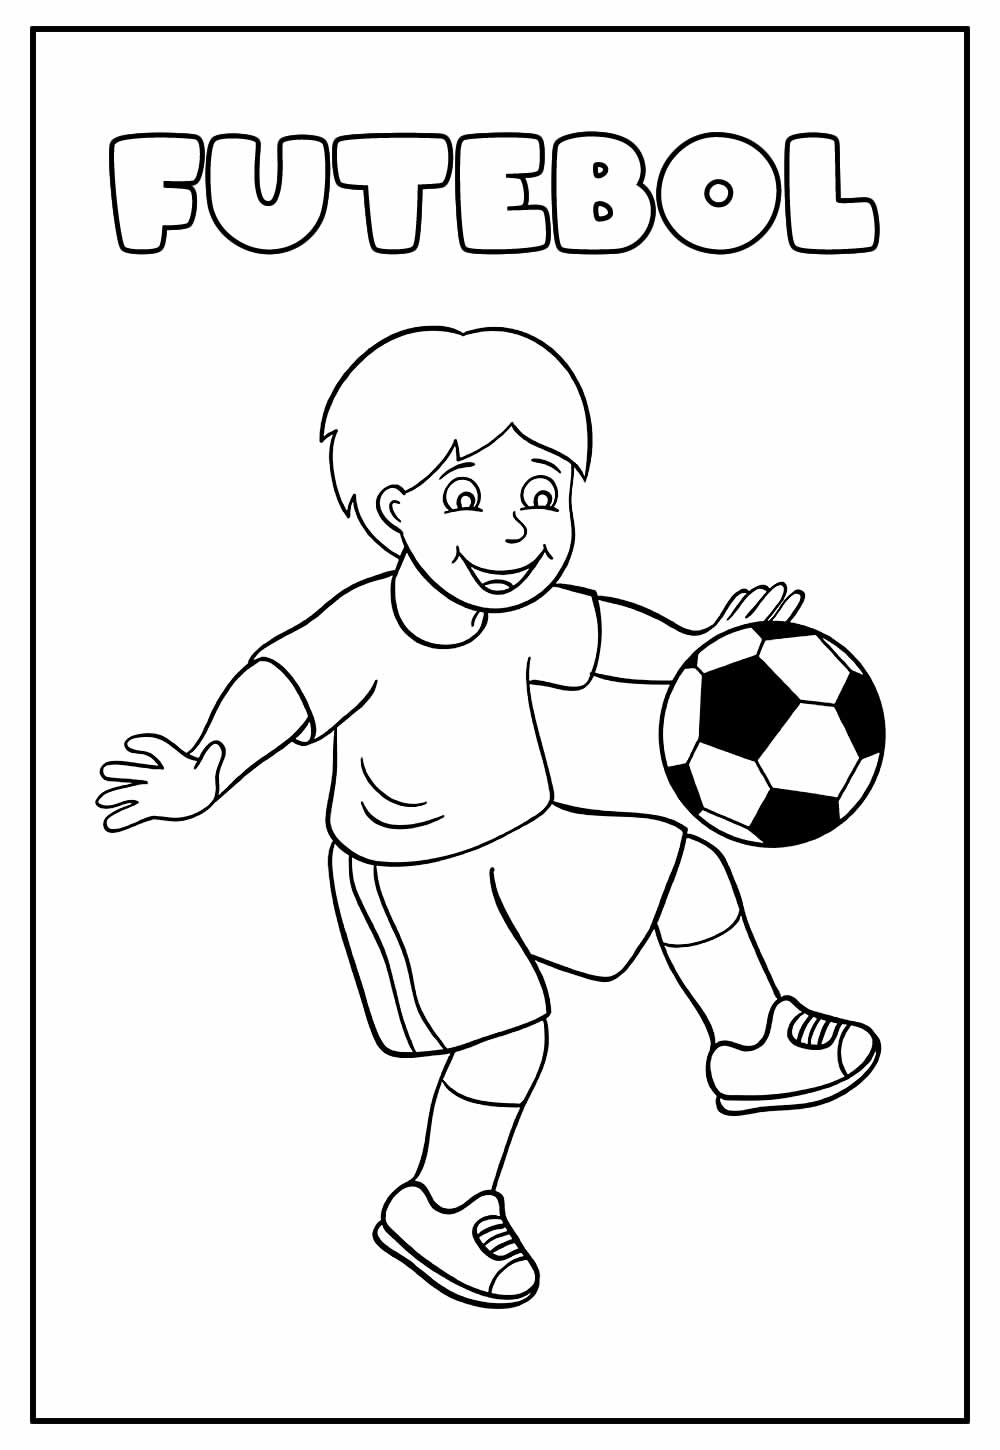 Desenho Educativo de Futebol para colorir